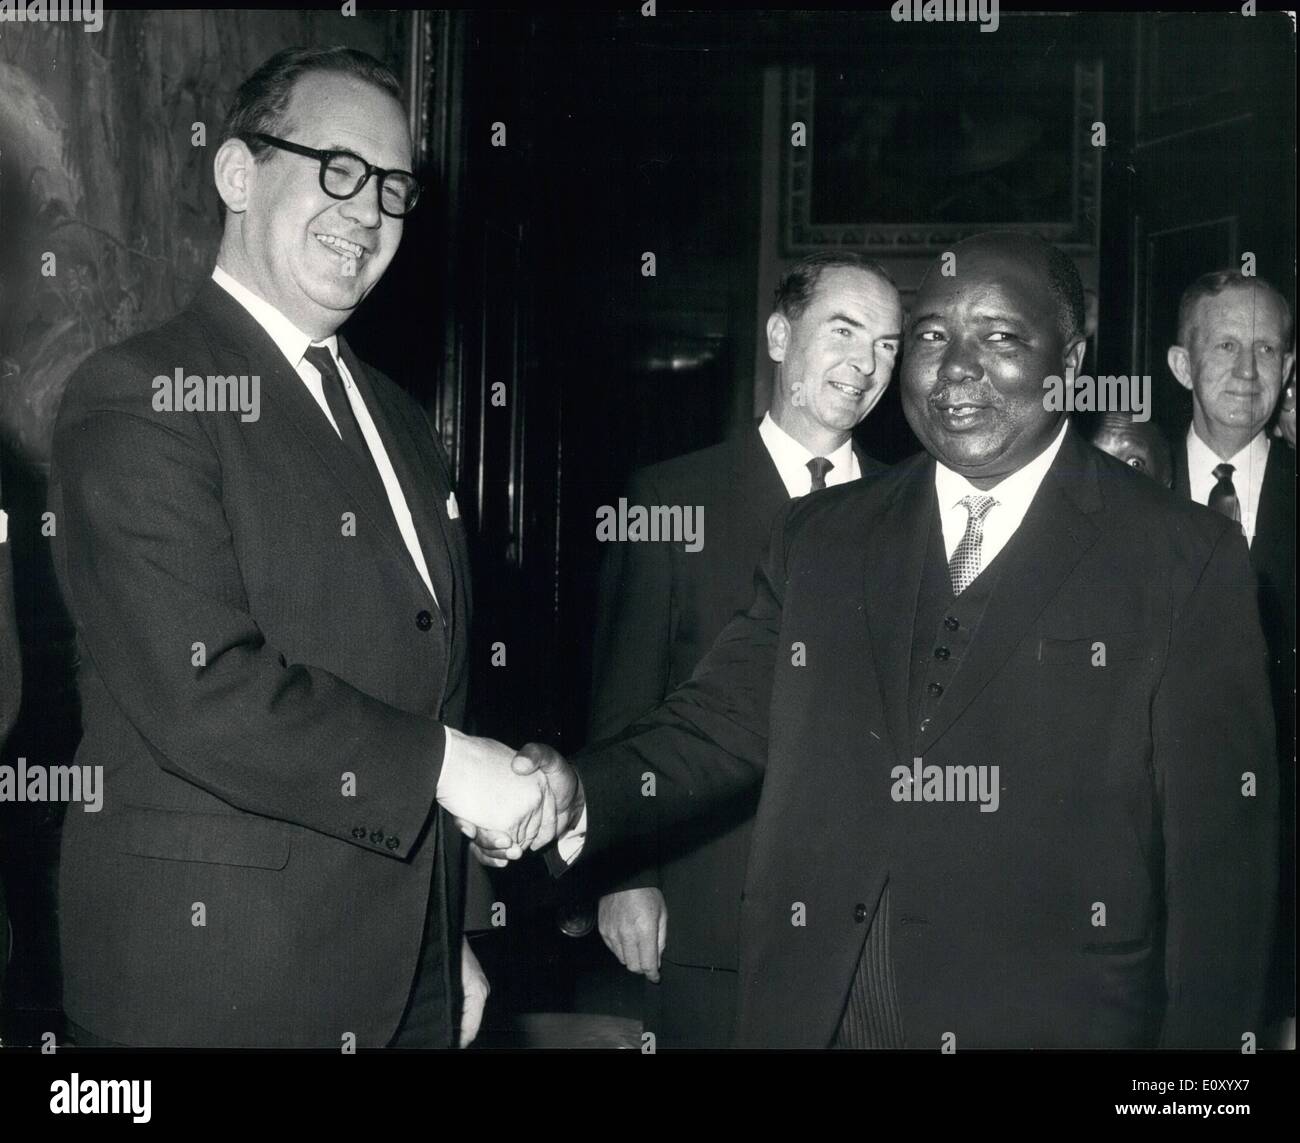 02 février 1968 - Conférence de l'indépendance du Swaziland : la cérémonie d'ouverture de la Conférence de l'indépendance du Swaziland a eu lieu aujourd'hui à Marlborough House, Londres. Le secrétaire d'État aux affaires du Commonwealth (M. George Thomson) a présidé la cérémonie. Conduisant la délégation swazie a été l Makhosimi Dlamini, le premier premier ministre. Photo montre M. George Thomson (à gauche) vu Prince Makhosini Dlamini, de souhaits au Marlborough House d'aujourd'hui. Banque D'Images